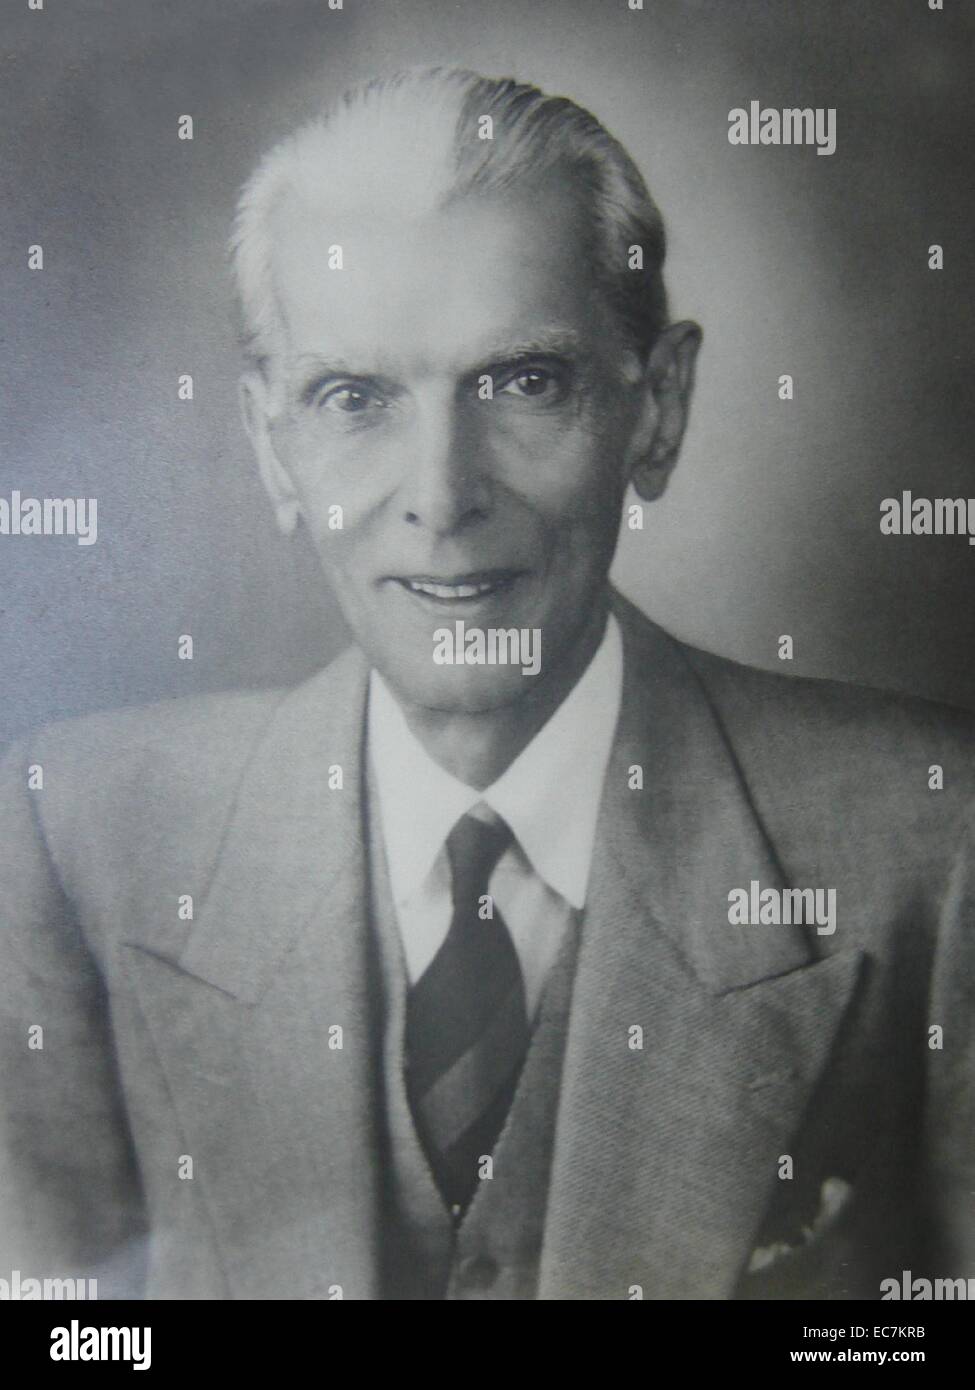 Muhammad Ali Jinnah 25 Dicembre 1876 - 11 settembre 1948. avvocato, politico e il fondatore del Pakistan. Jinnah ha servito come leader della All-India Lega musulmana dal 1913 fino al Pakistan l'indipendenza il 14 agosto 1947, e come il Pakistan il primo governatore generale dall'indipendenza fino alla sua morte Foto Stock